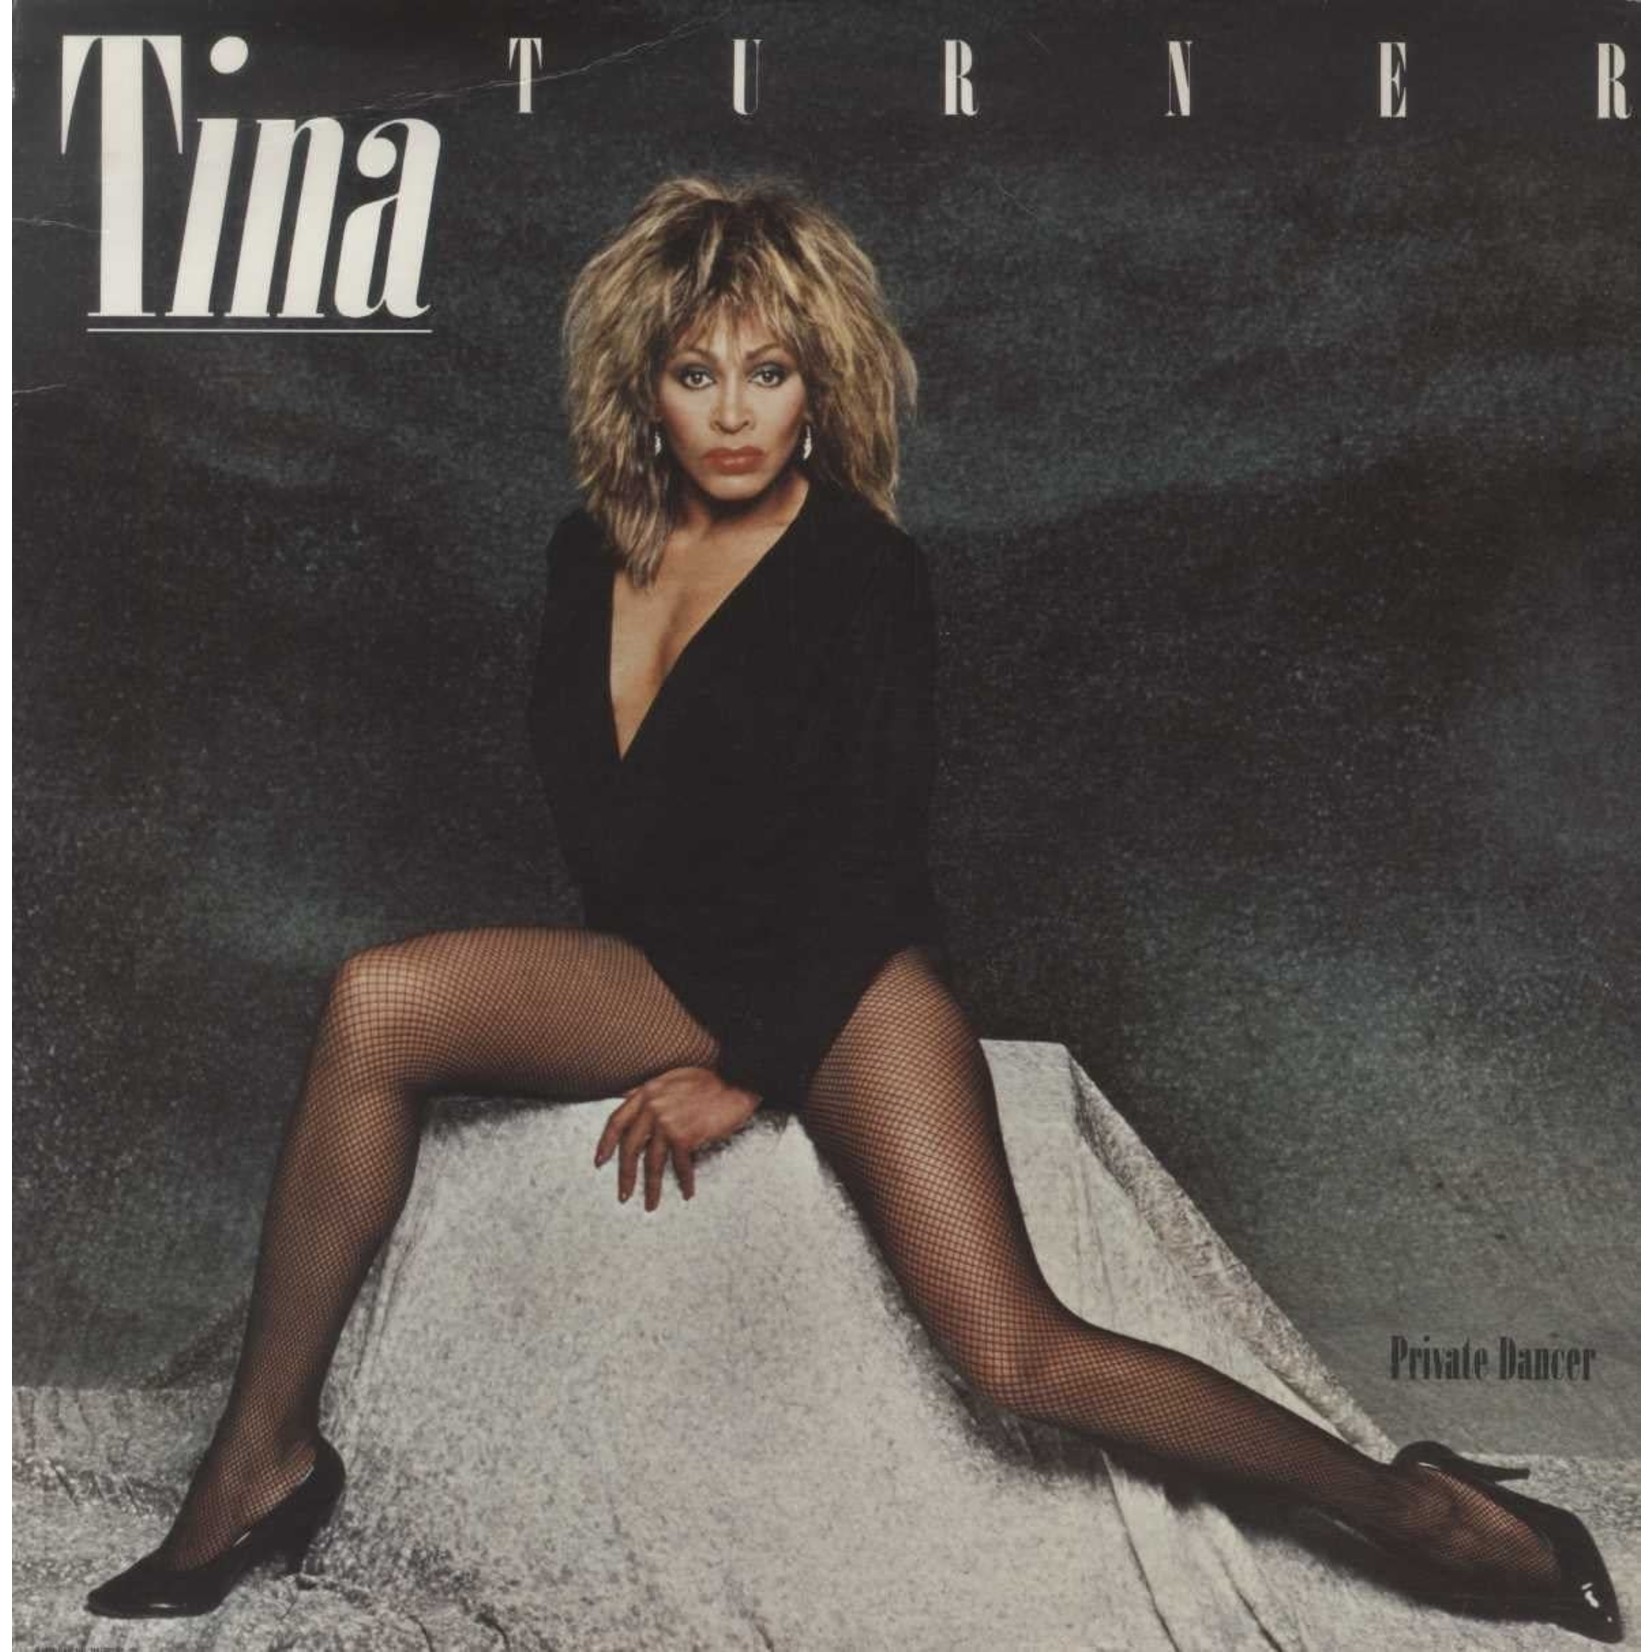 [Vintage] Tina Turner - Private Dancer